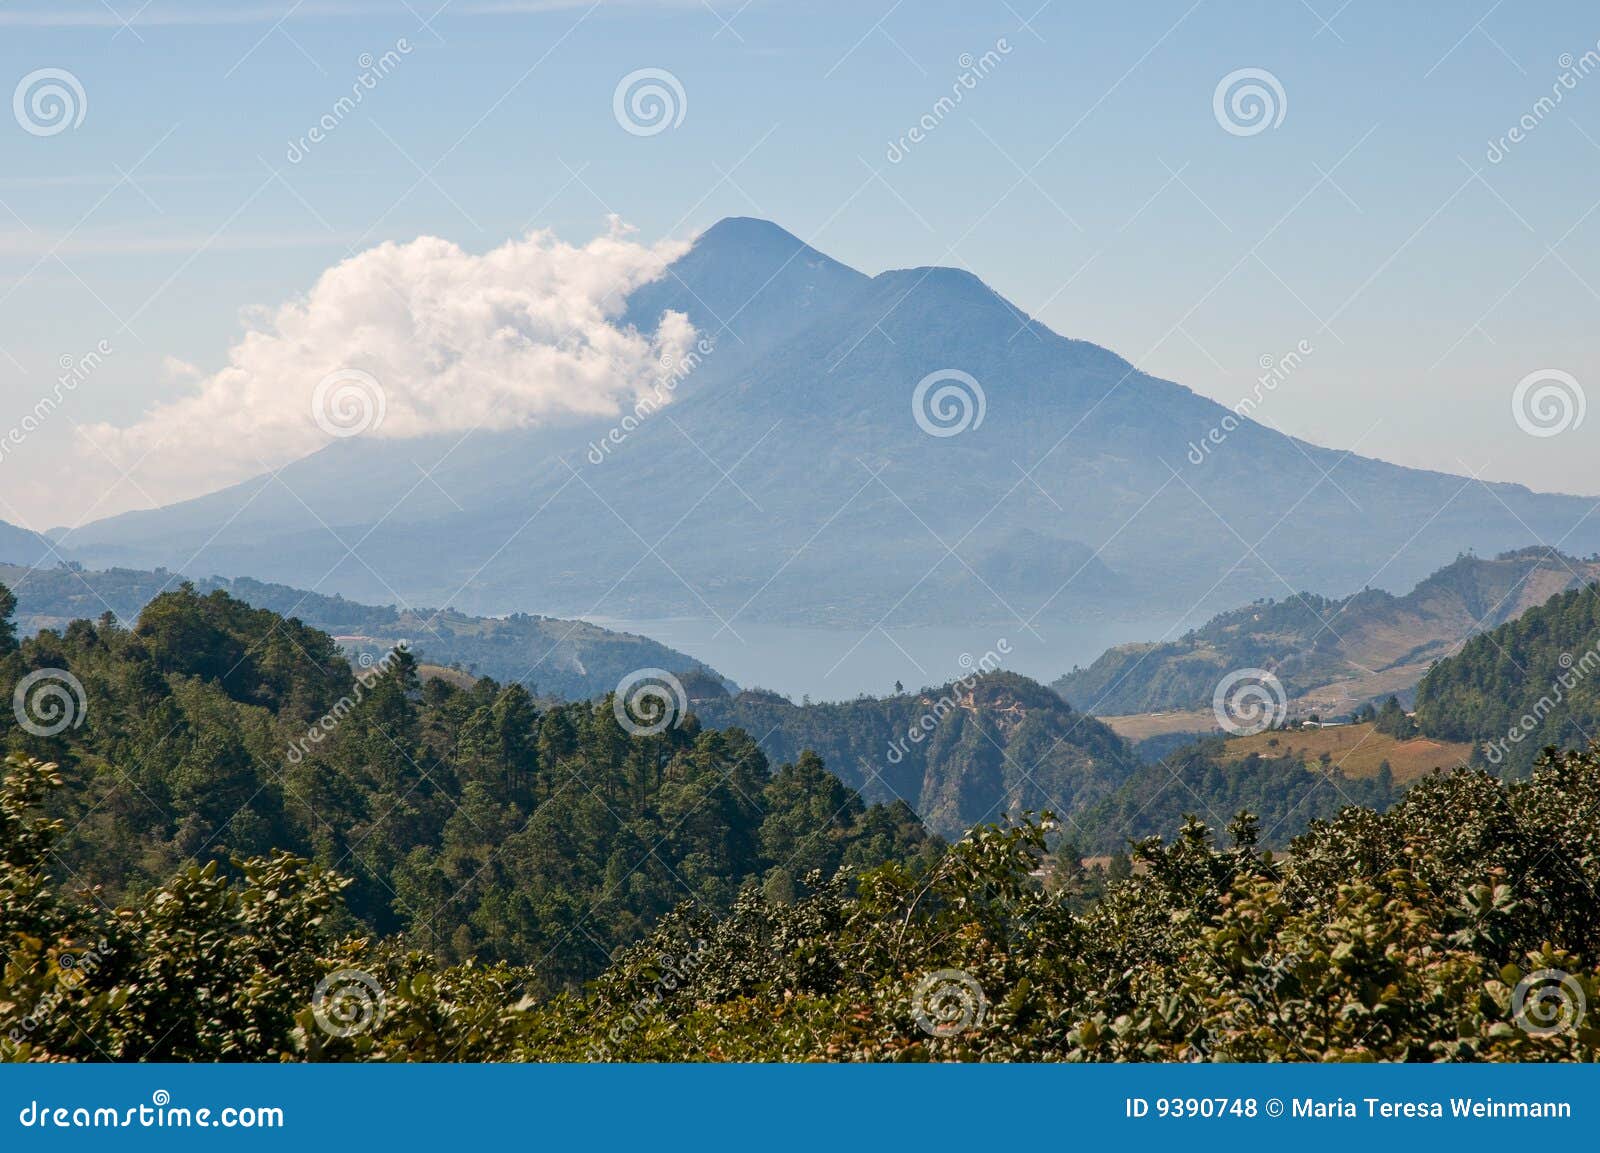 guatemala landscape